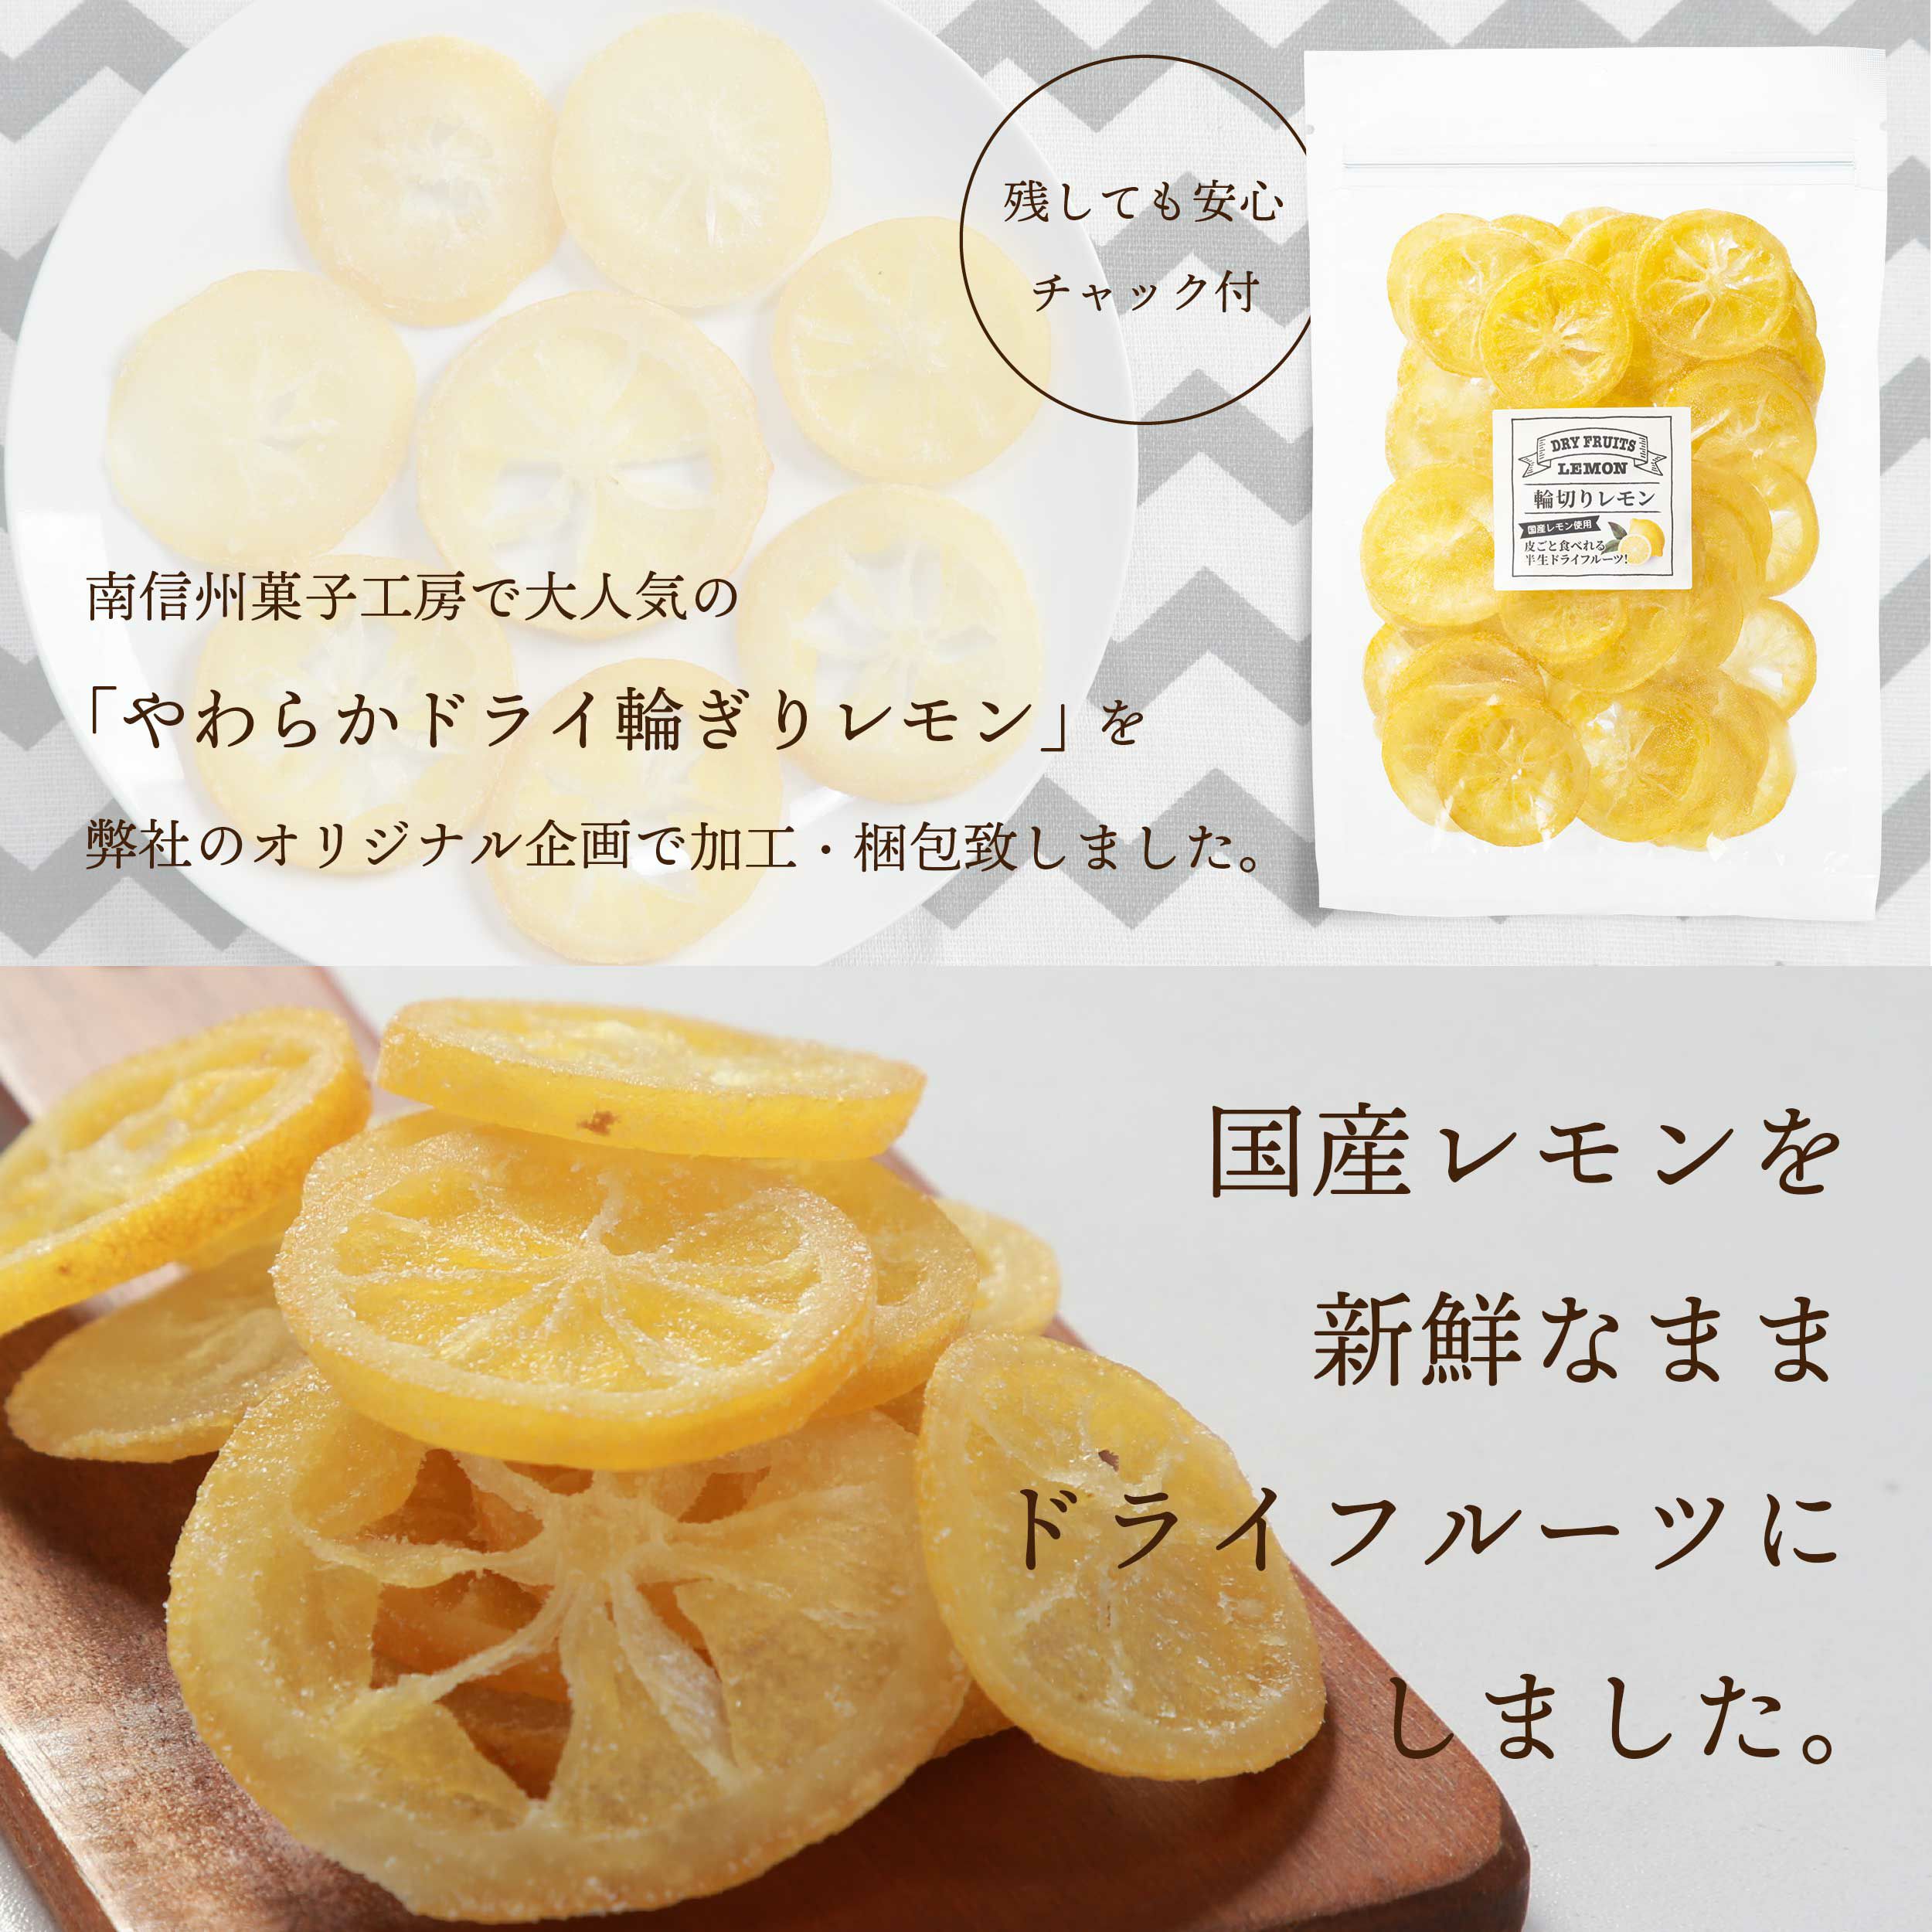 ドライフルーツ 国産 輪切り レモン 500g 特長2